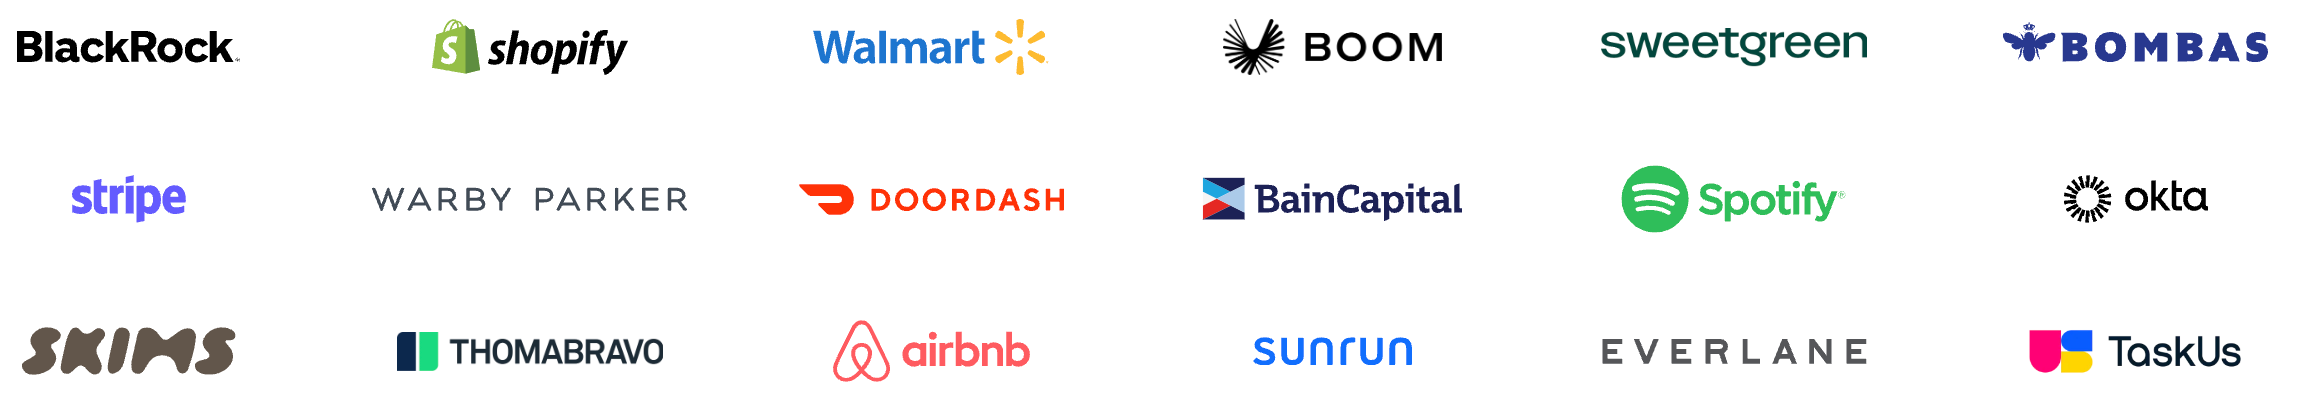 grid of logos